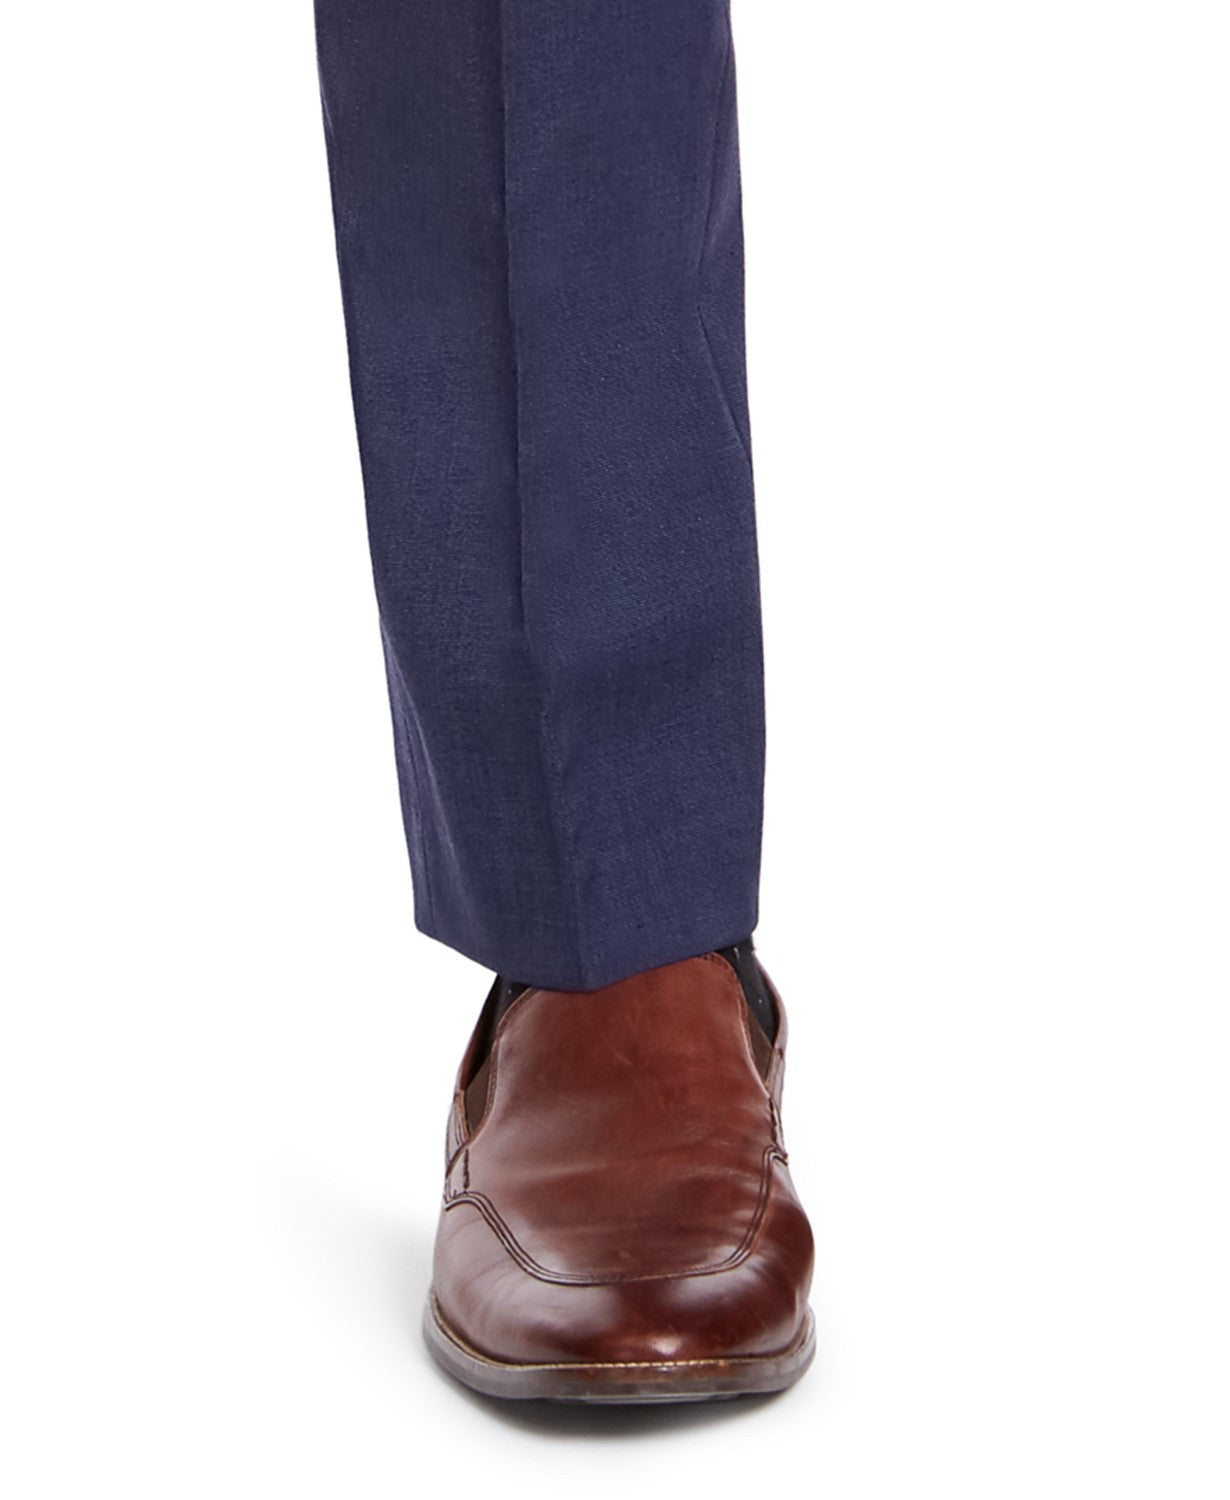 IZOD Men's Classic-Fit Suit Pants Mid Blue Flat Pant 32 x 32